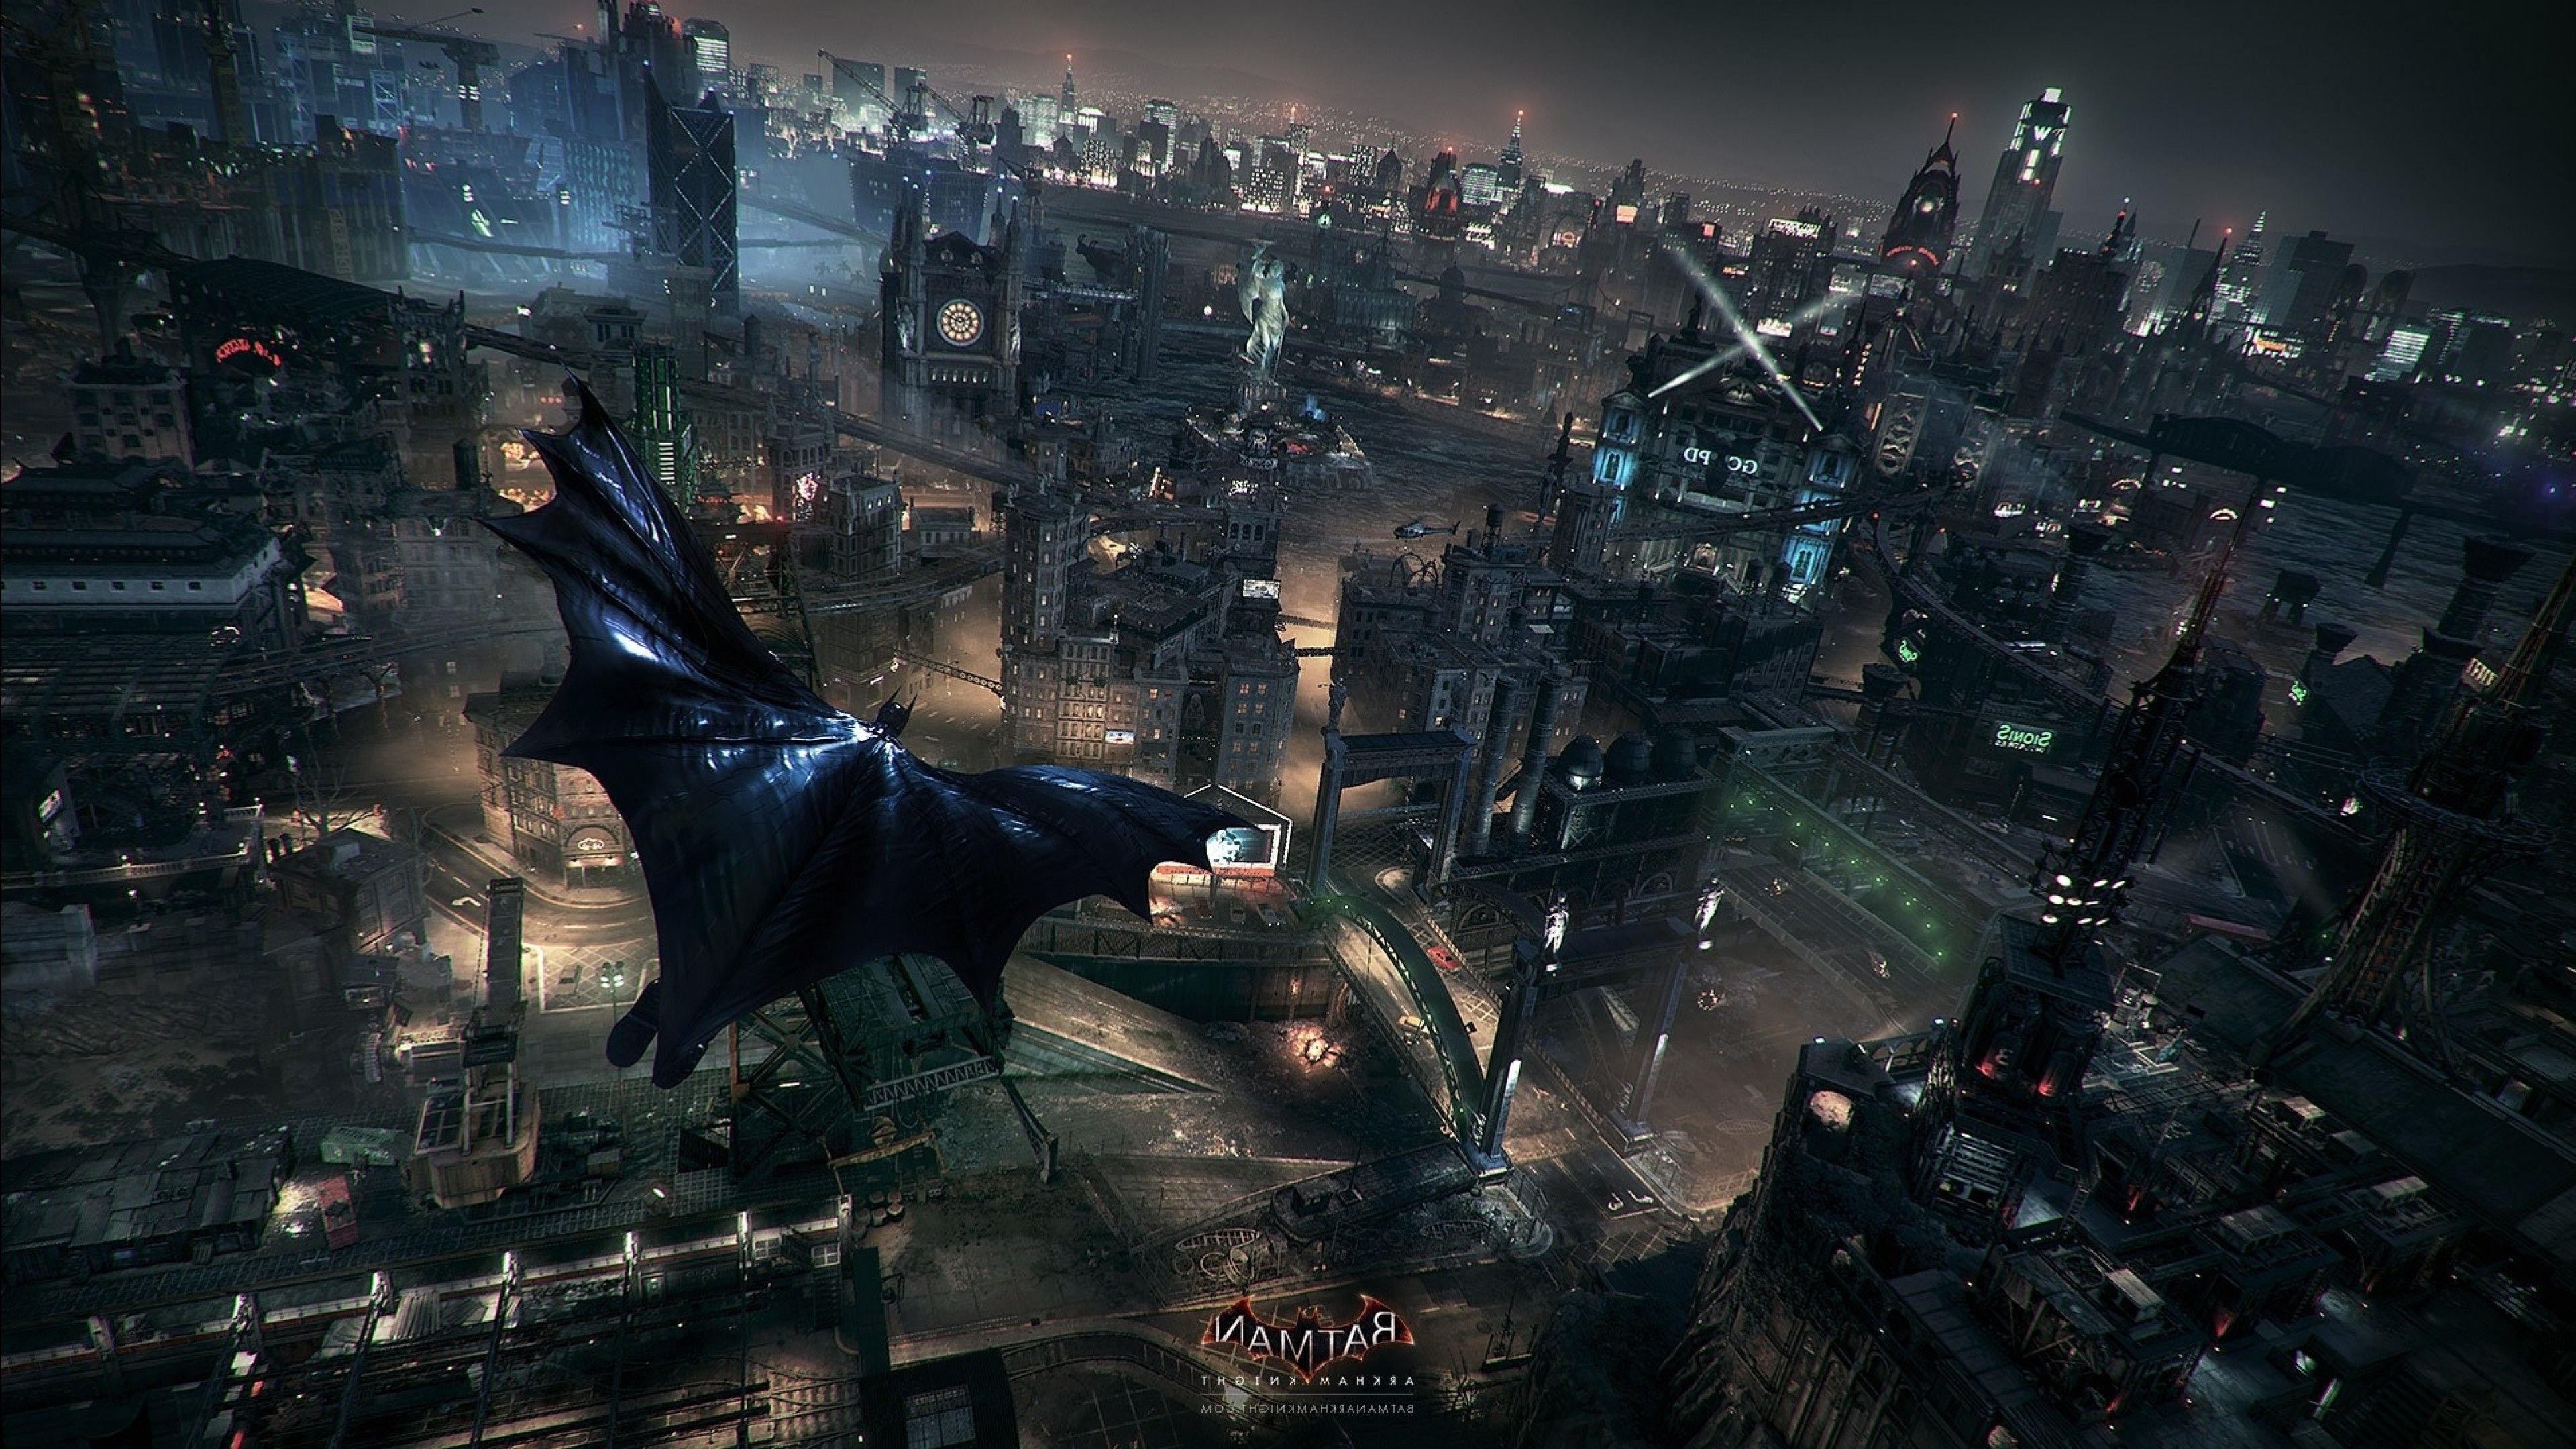 Batman: Arkham Knight, Rocksteady Studios, Batman, Gotham City